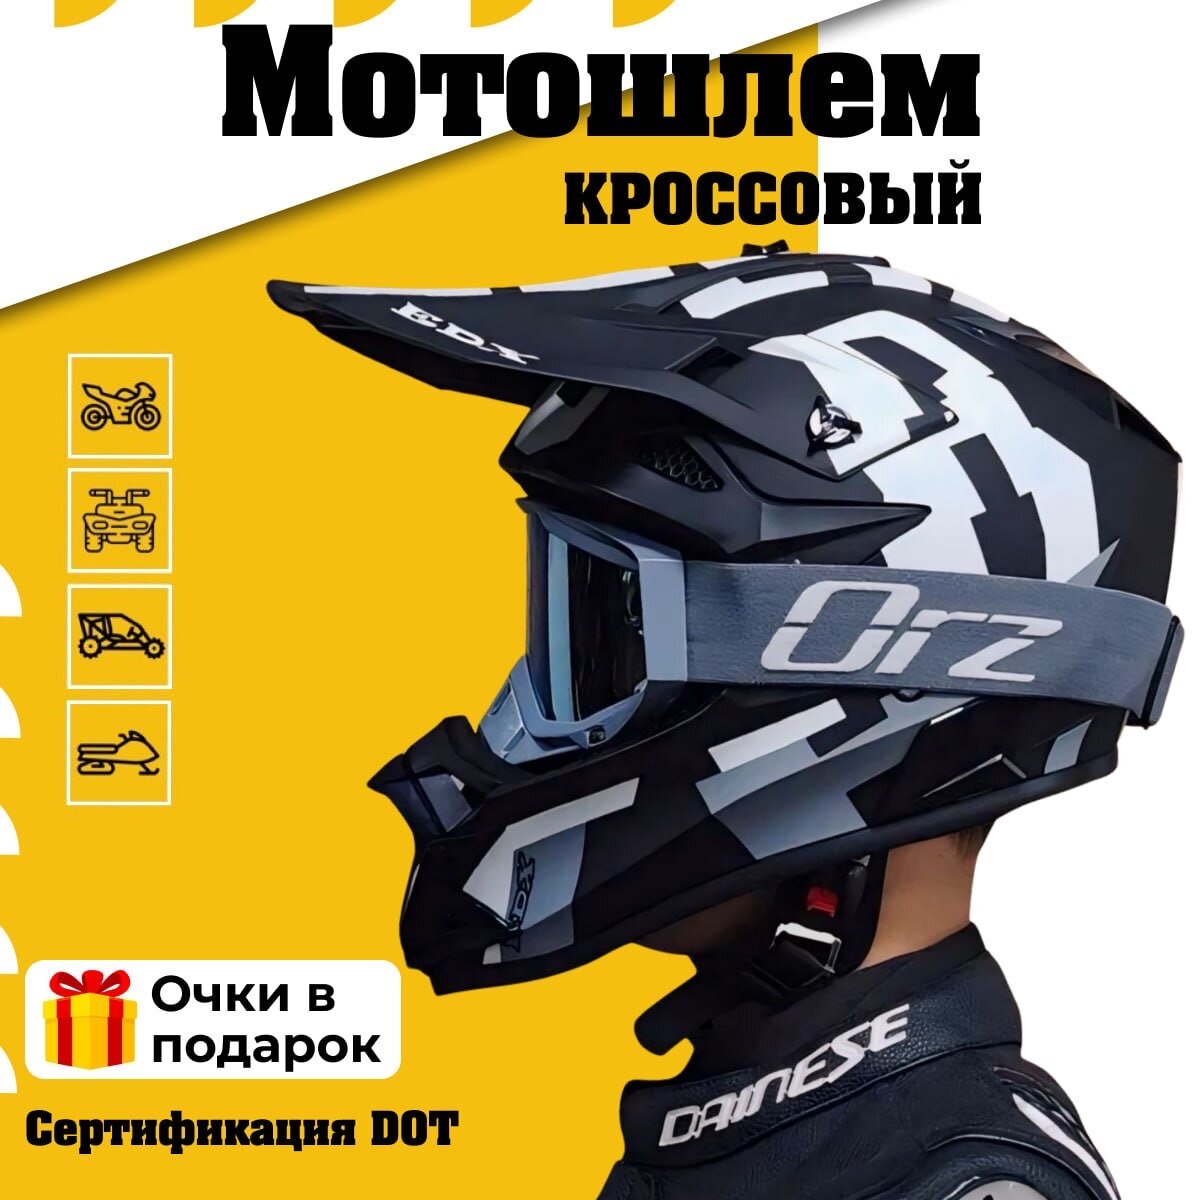 Шлем с очками кроссовый для мотоцикла квадроцикла, мотошлем питбайк EDX, черно-белый S